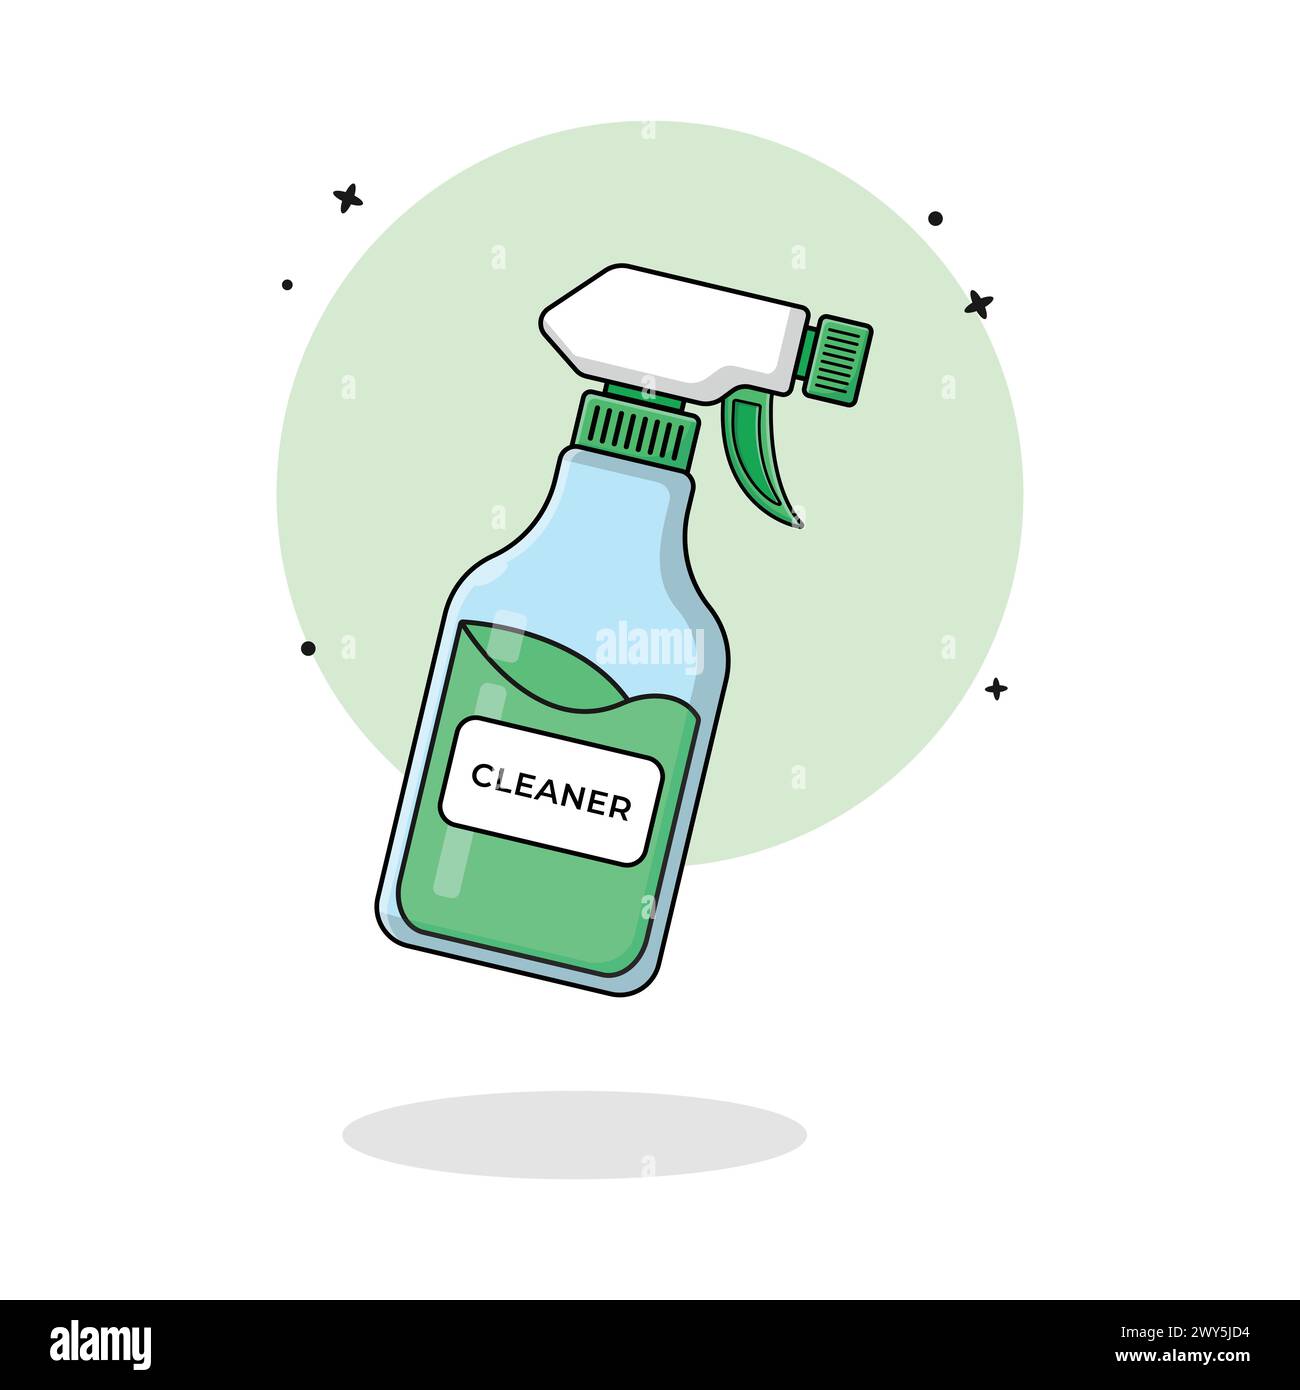 Illustrazione del vettore spray MultiSurface Cleaner. Progettazione concettuale dei prodotti per la pulizia Illustrazione Vettoriale